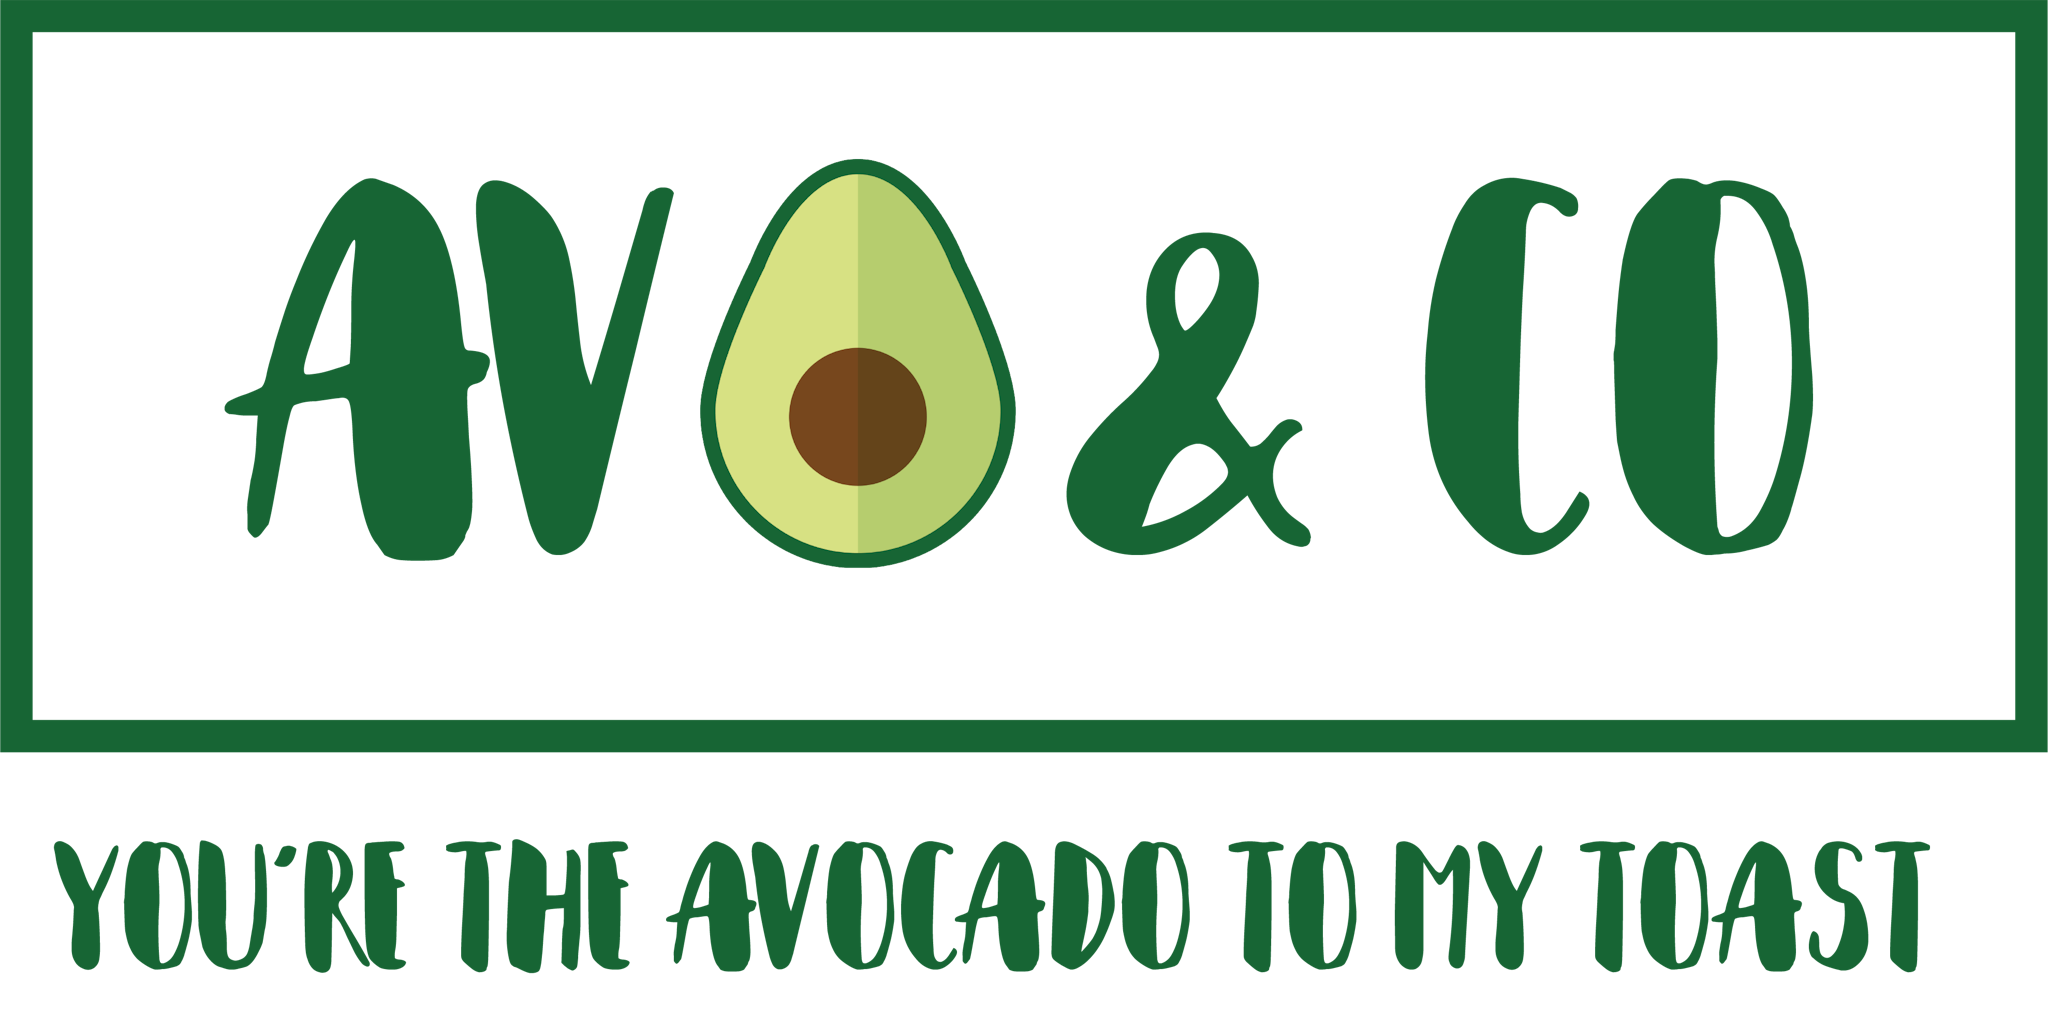 Avo & Co Brand Logo